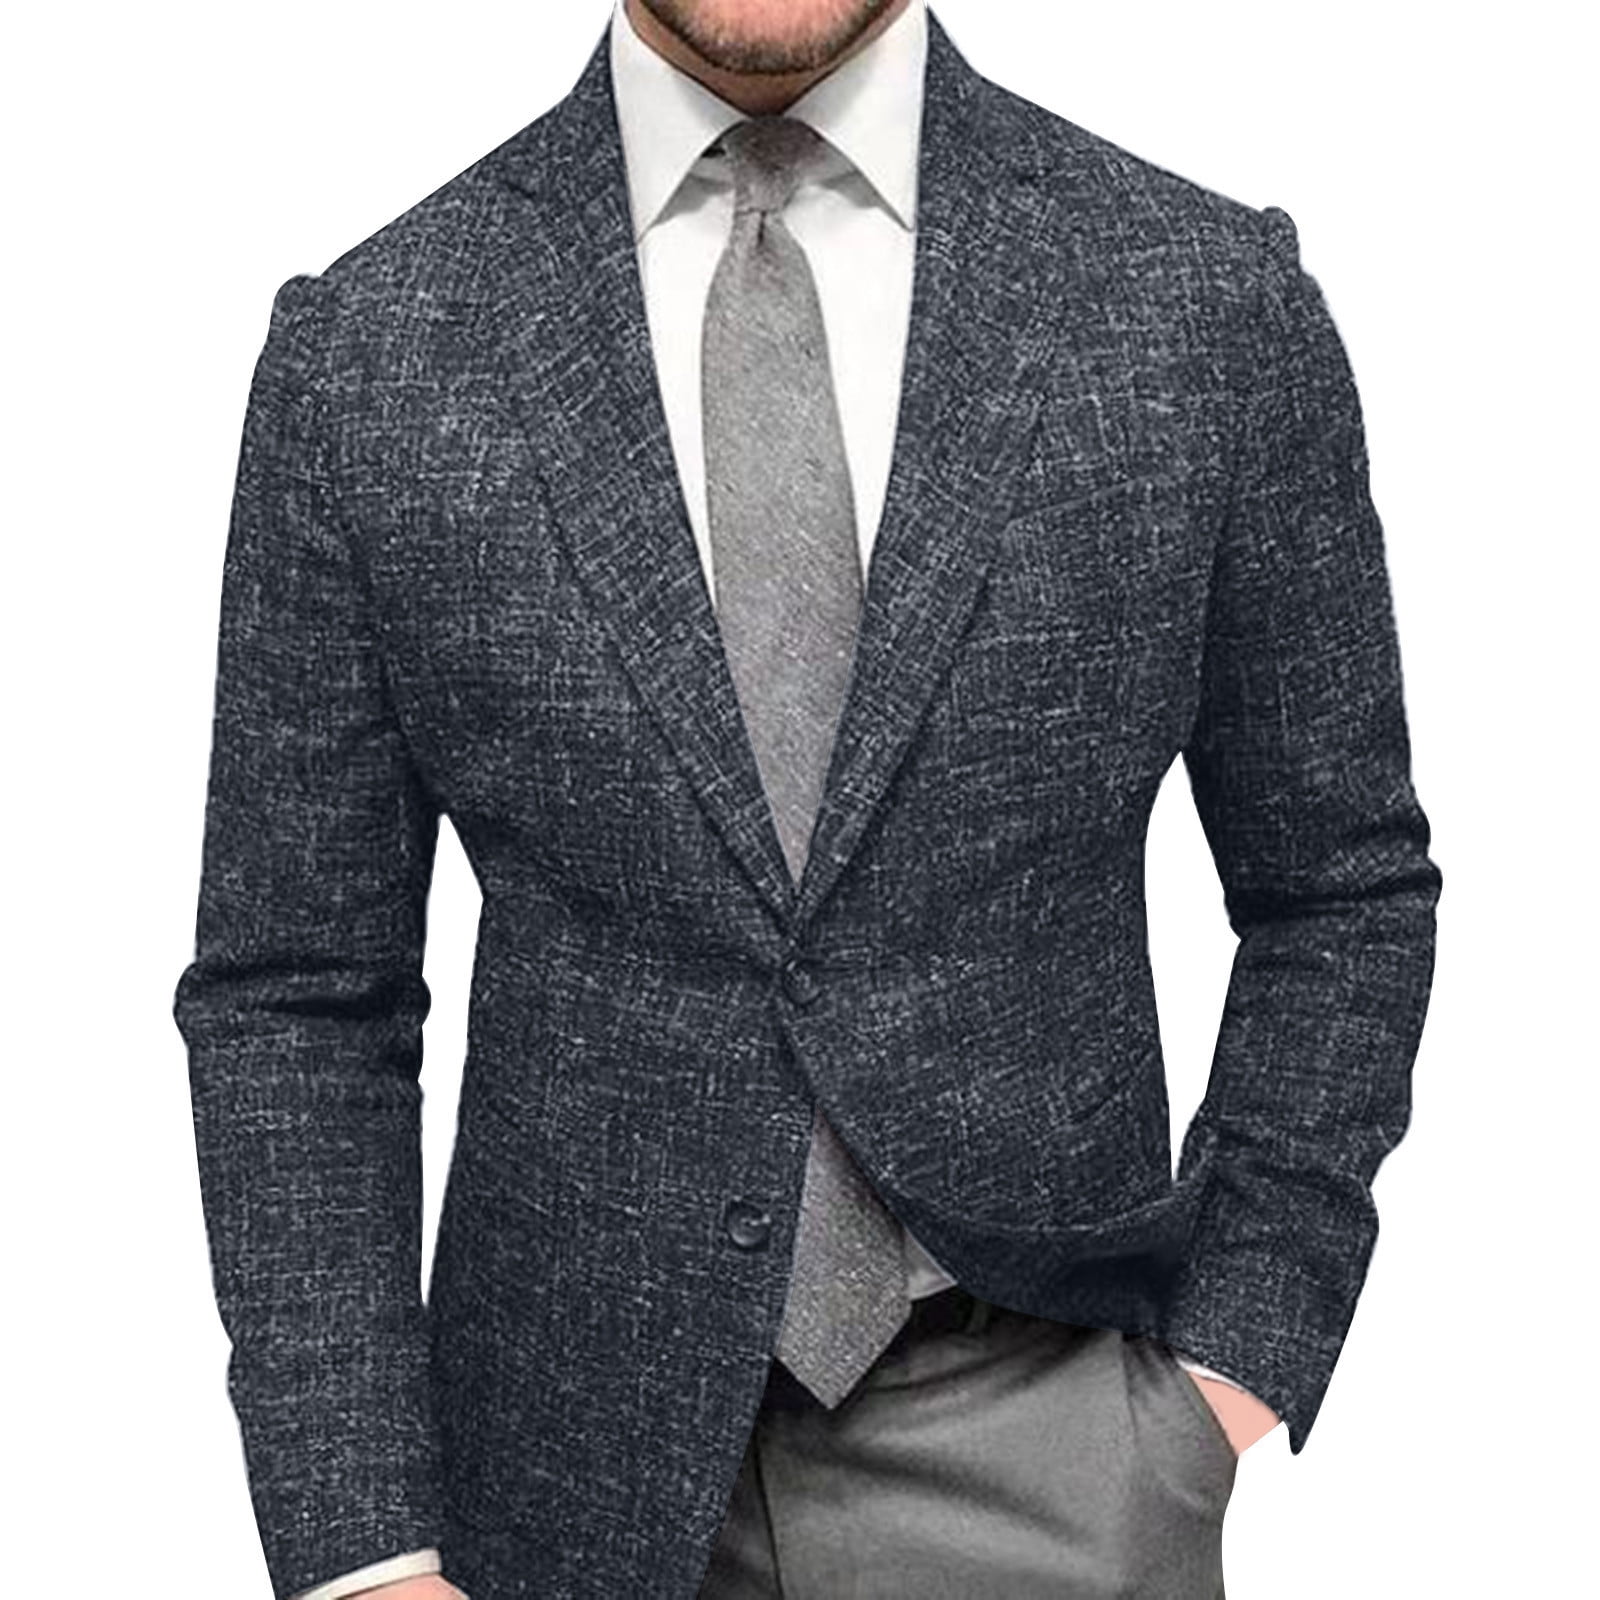 Men's Suits Autumn Winter Fashion Casual Slim Pocket Buckle Coat Suit ...